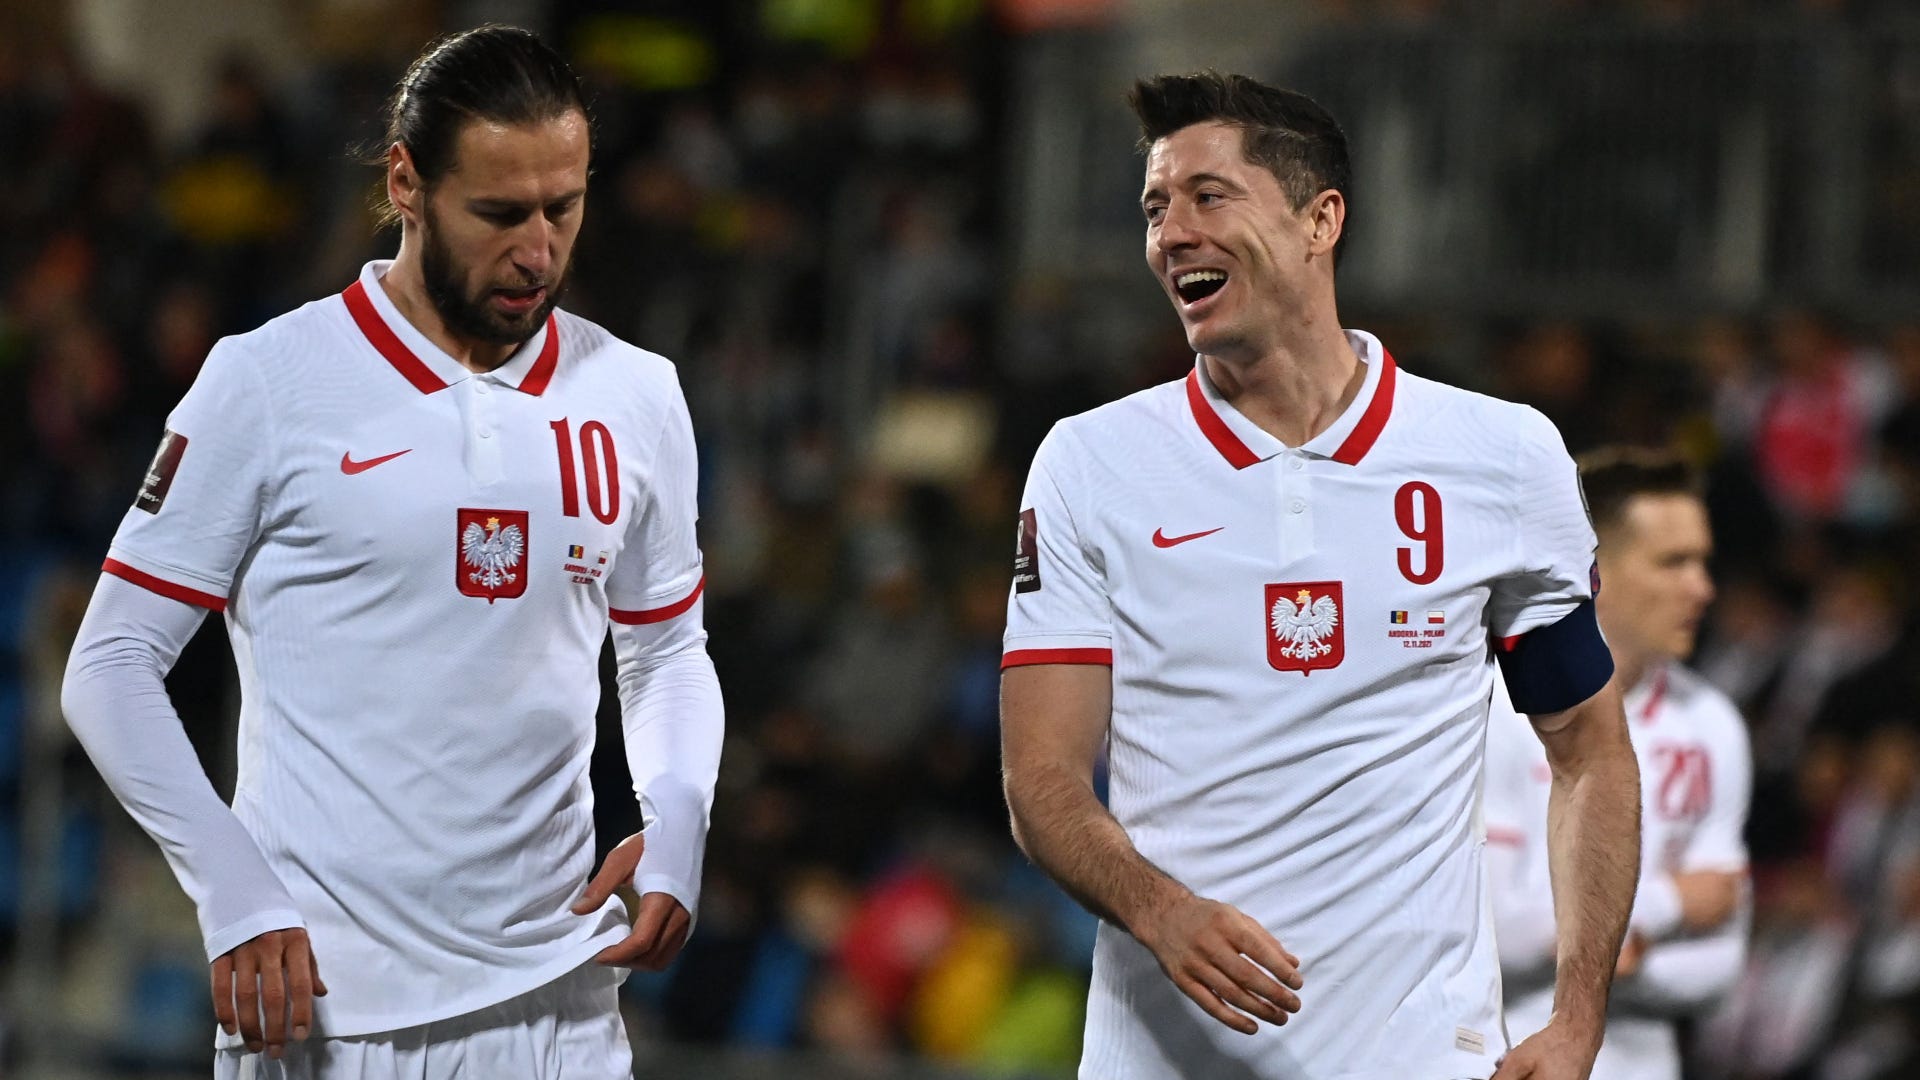 Futebolista polaco excluído da seleção e do Mundial 2022 - SIC Notícias